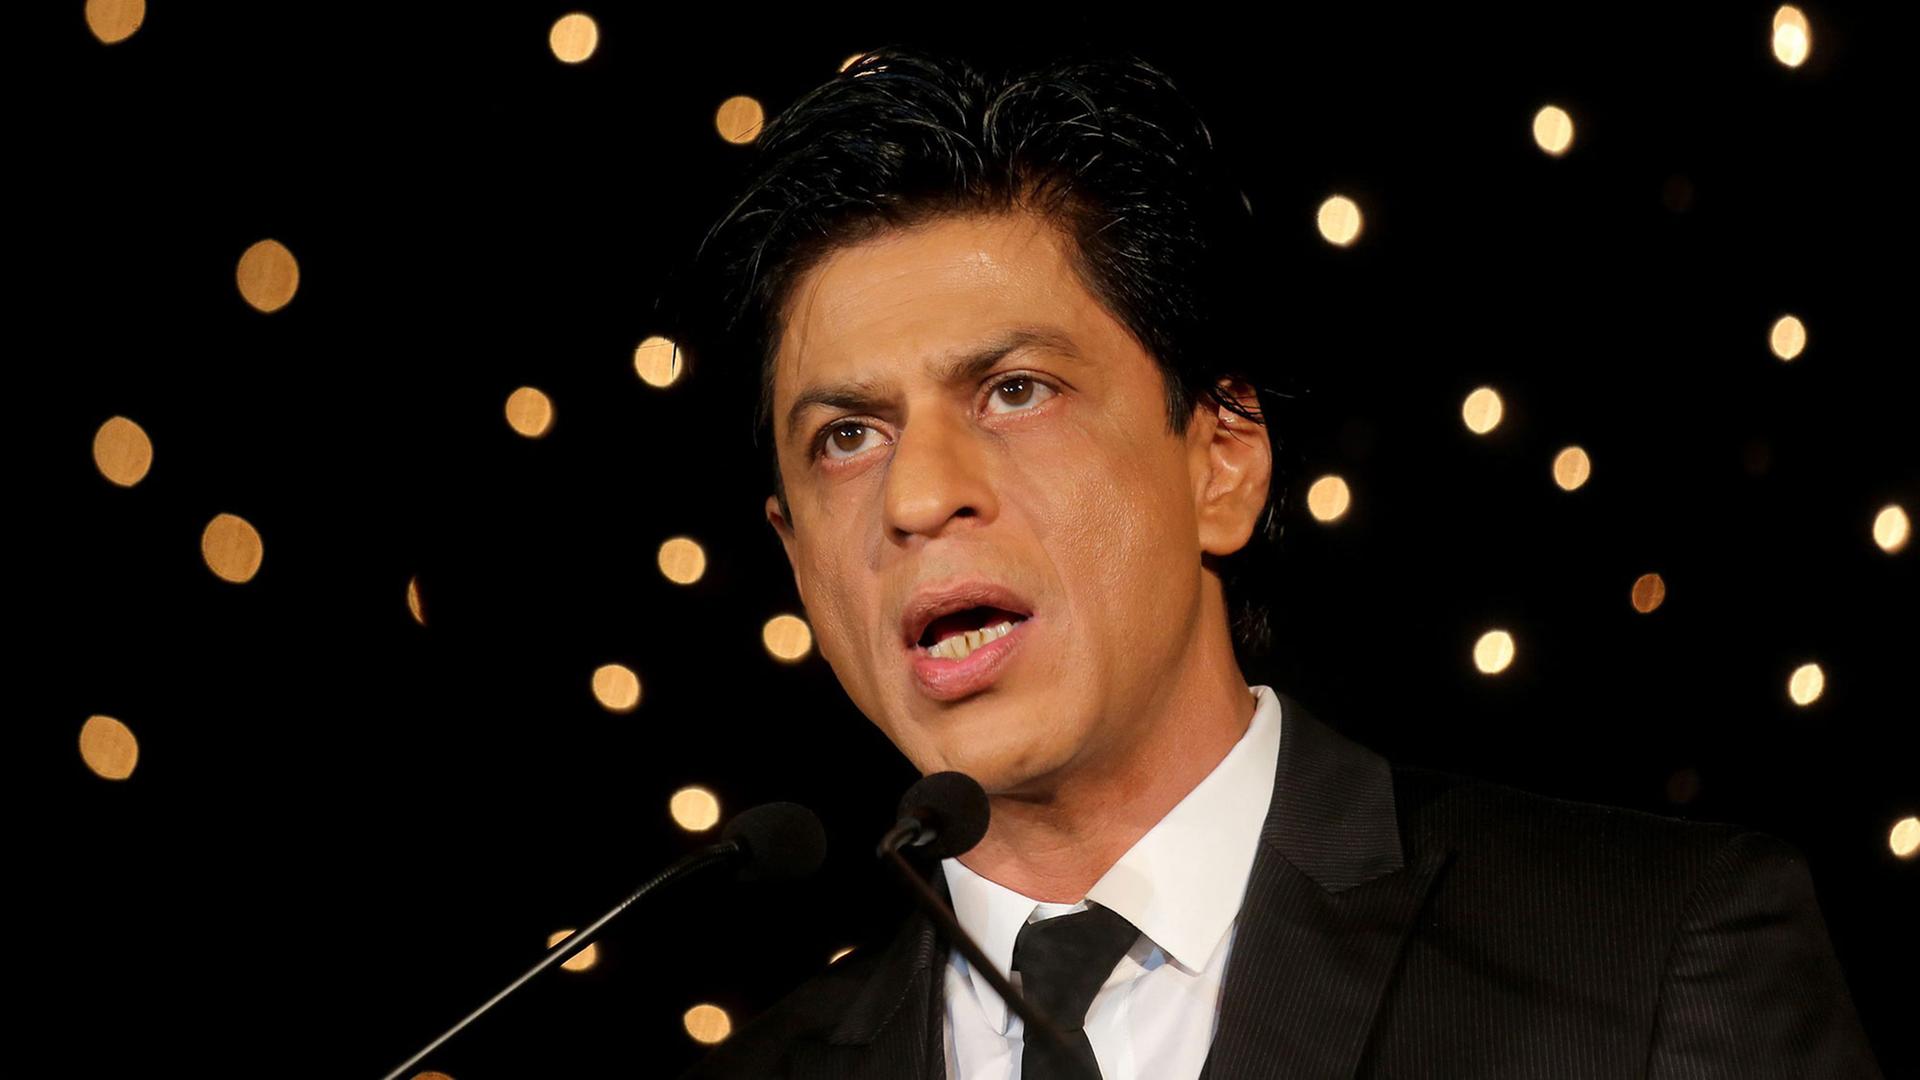 Der indische Bollywood-Schauspieler Shah Rukh Khan bei einem Promotion-Event am 11.12.2015 in Bangalore, Indien.